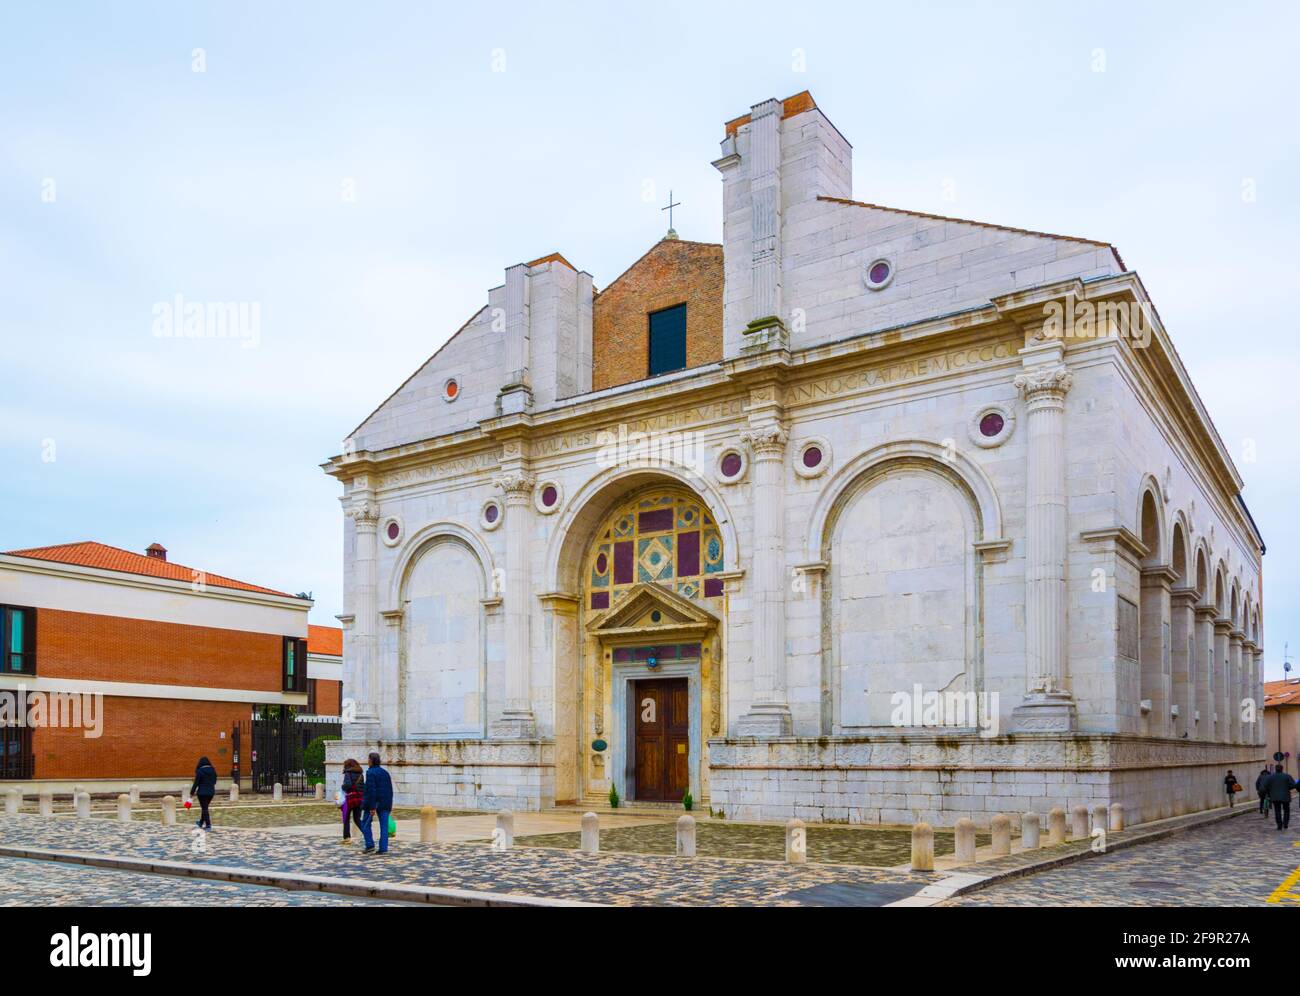 El Tempio Malatestiano (templo italiano de Malatesta) es la iglesia de la catedral de Rimini, Italia Foto de stock